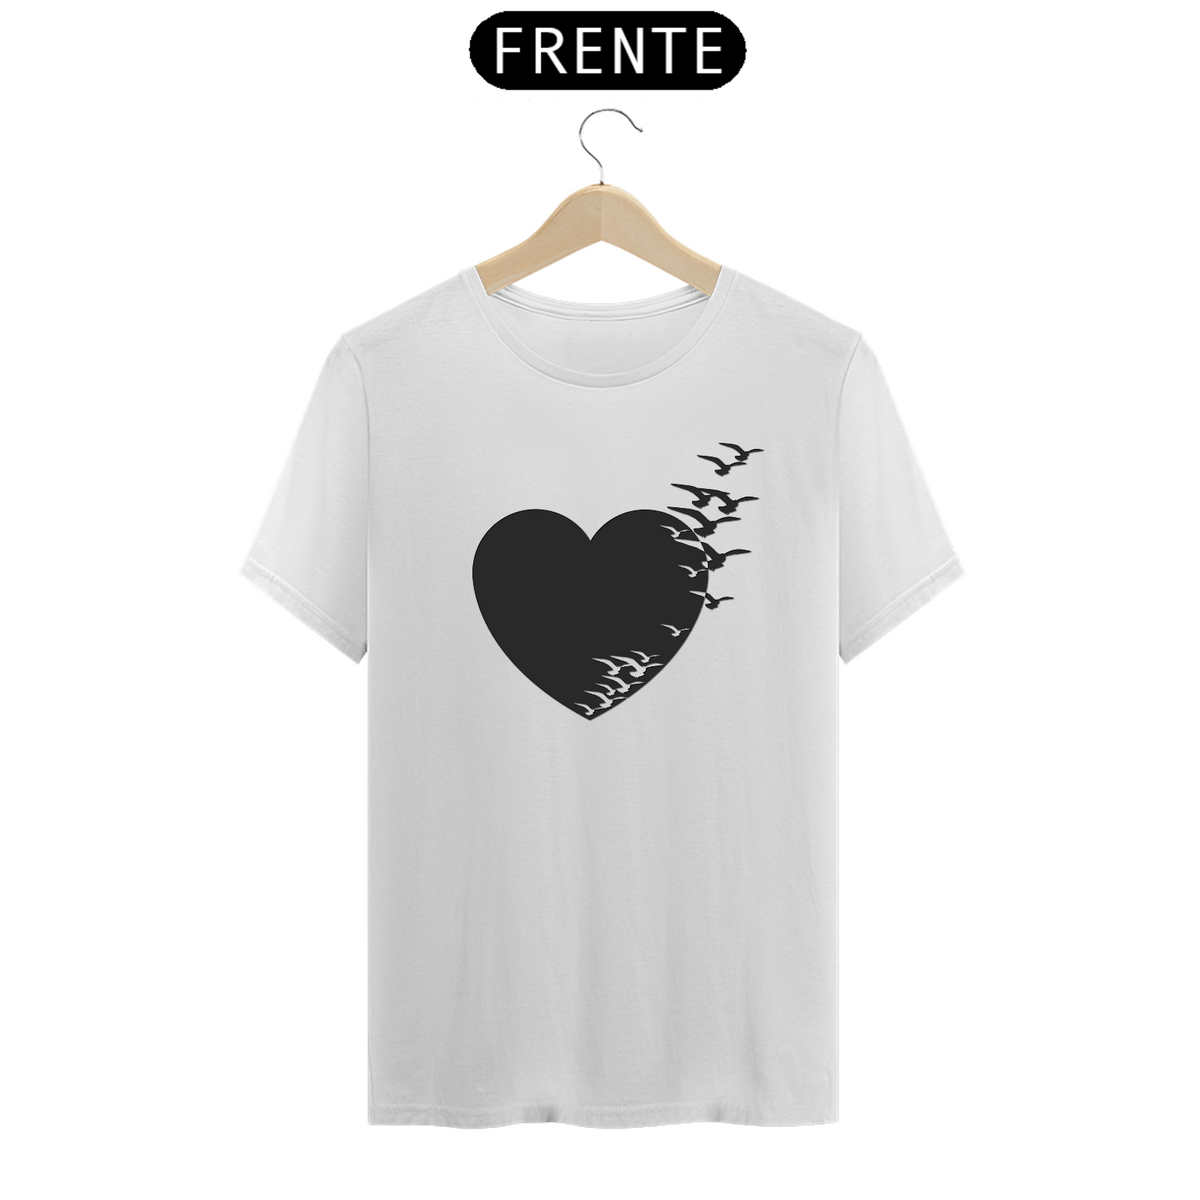 Nome do produto: Camiseta Coração